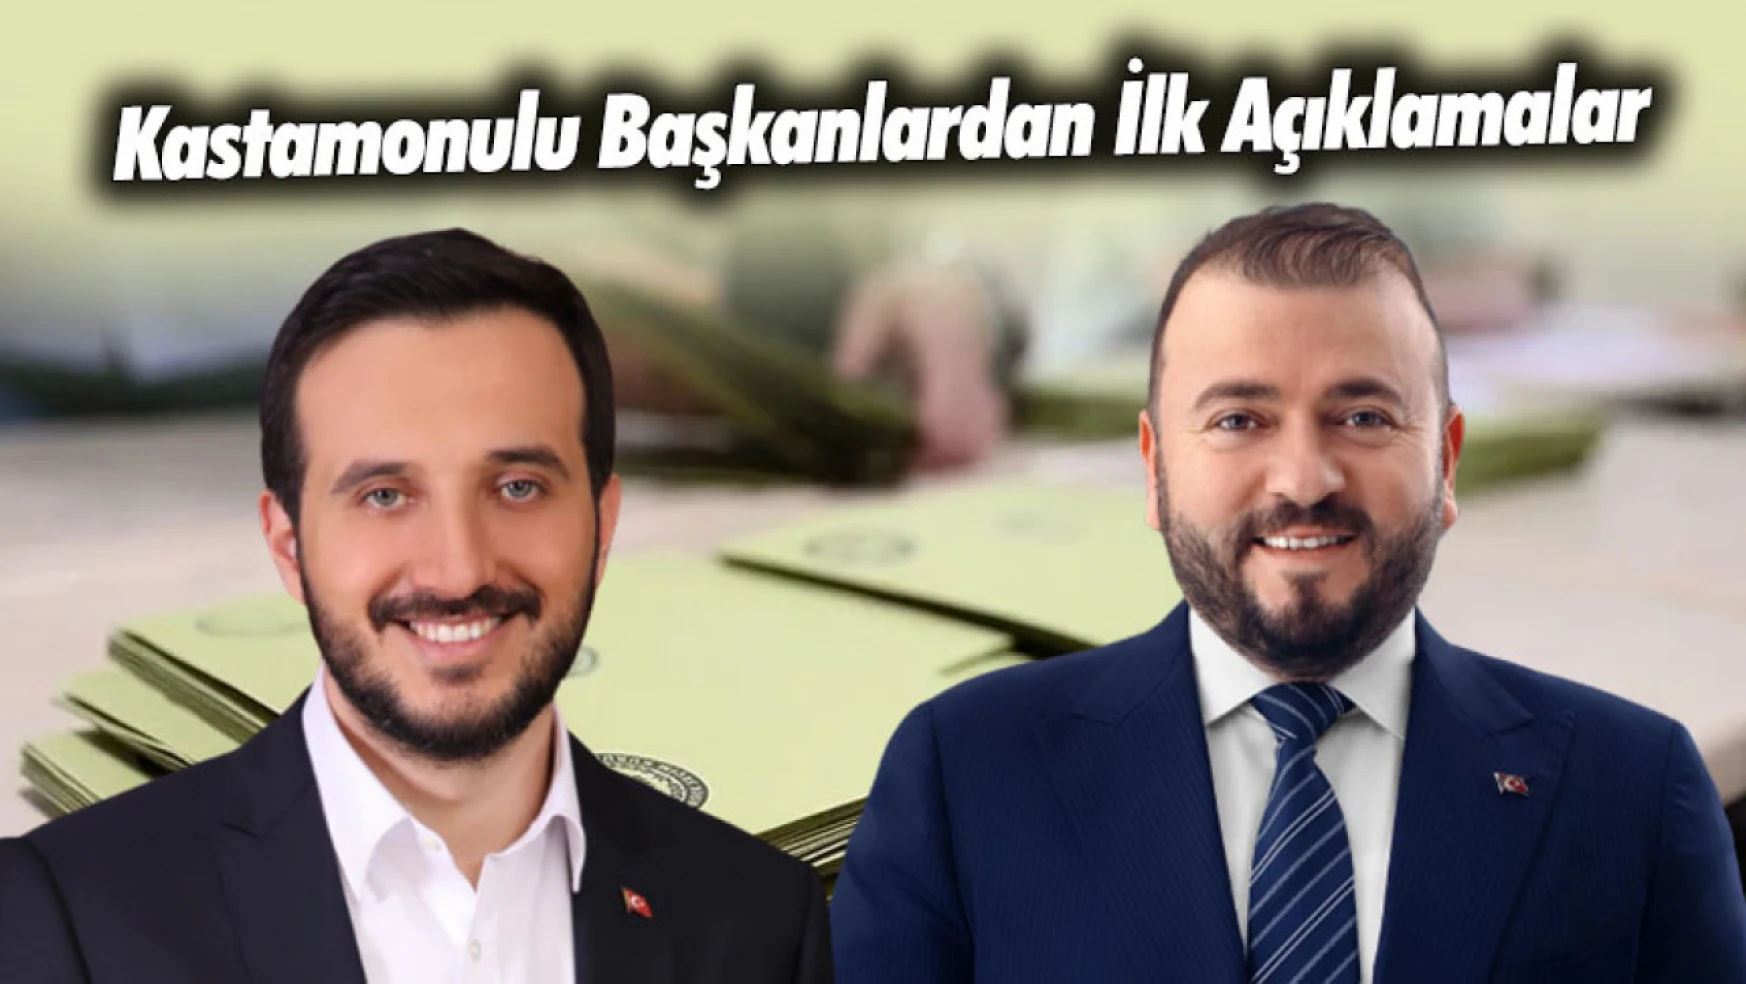 İstanbul'daki Kastamonulu Başkanlardan İlk Mesaj